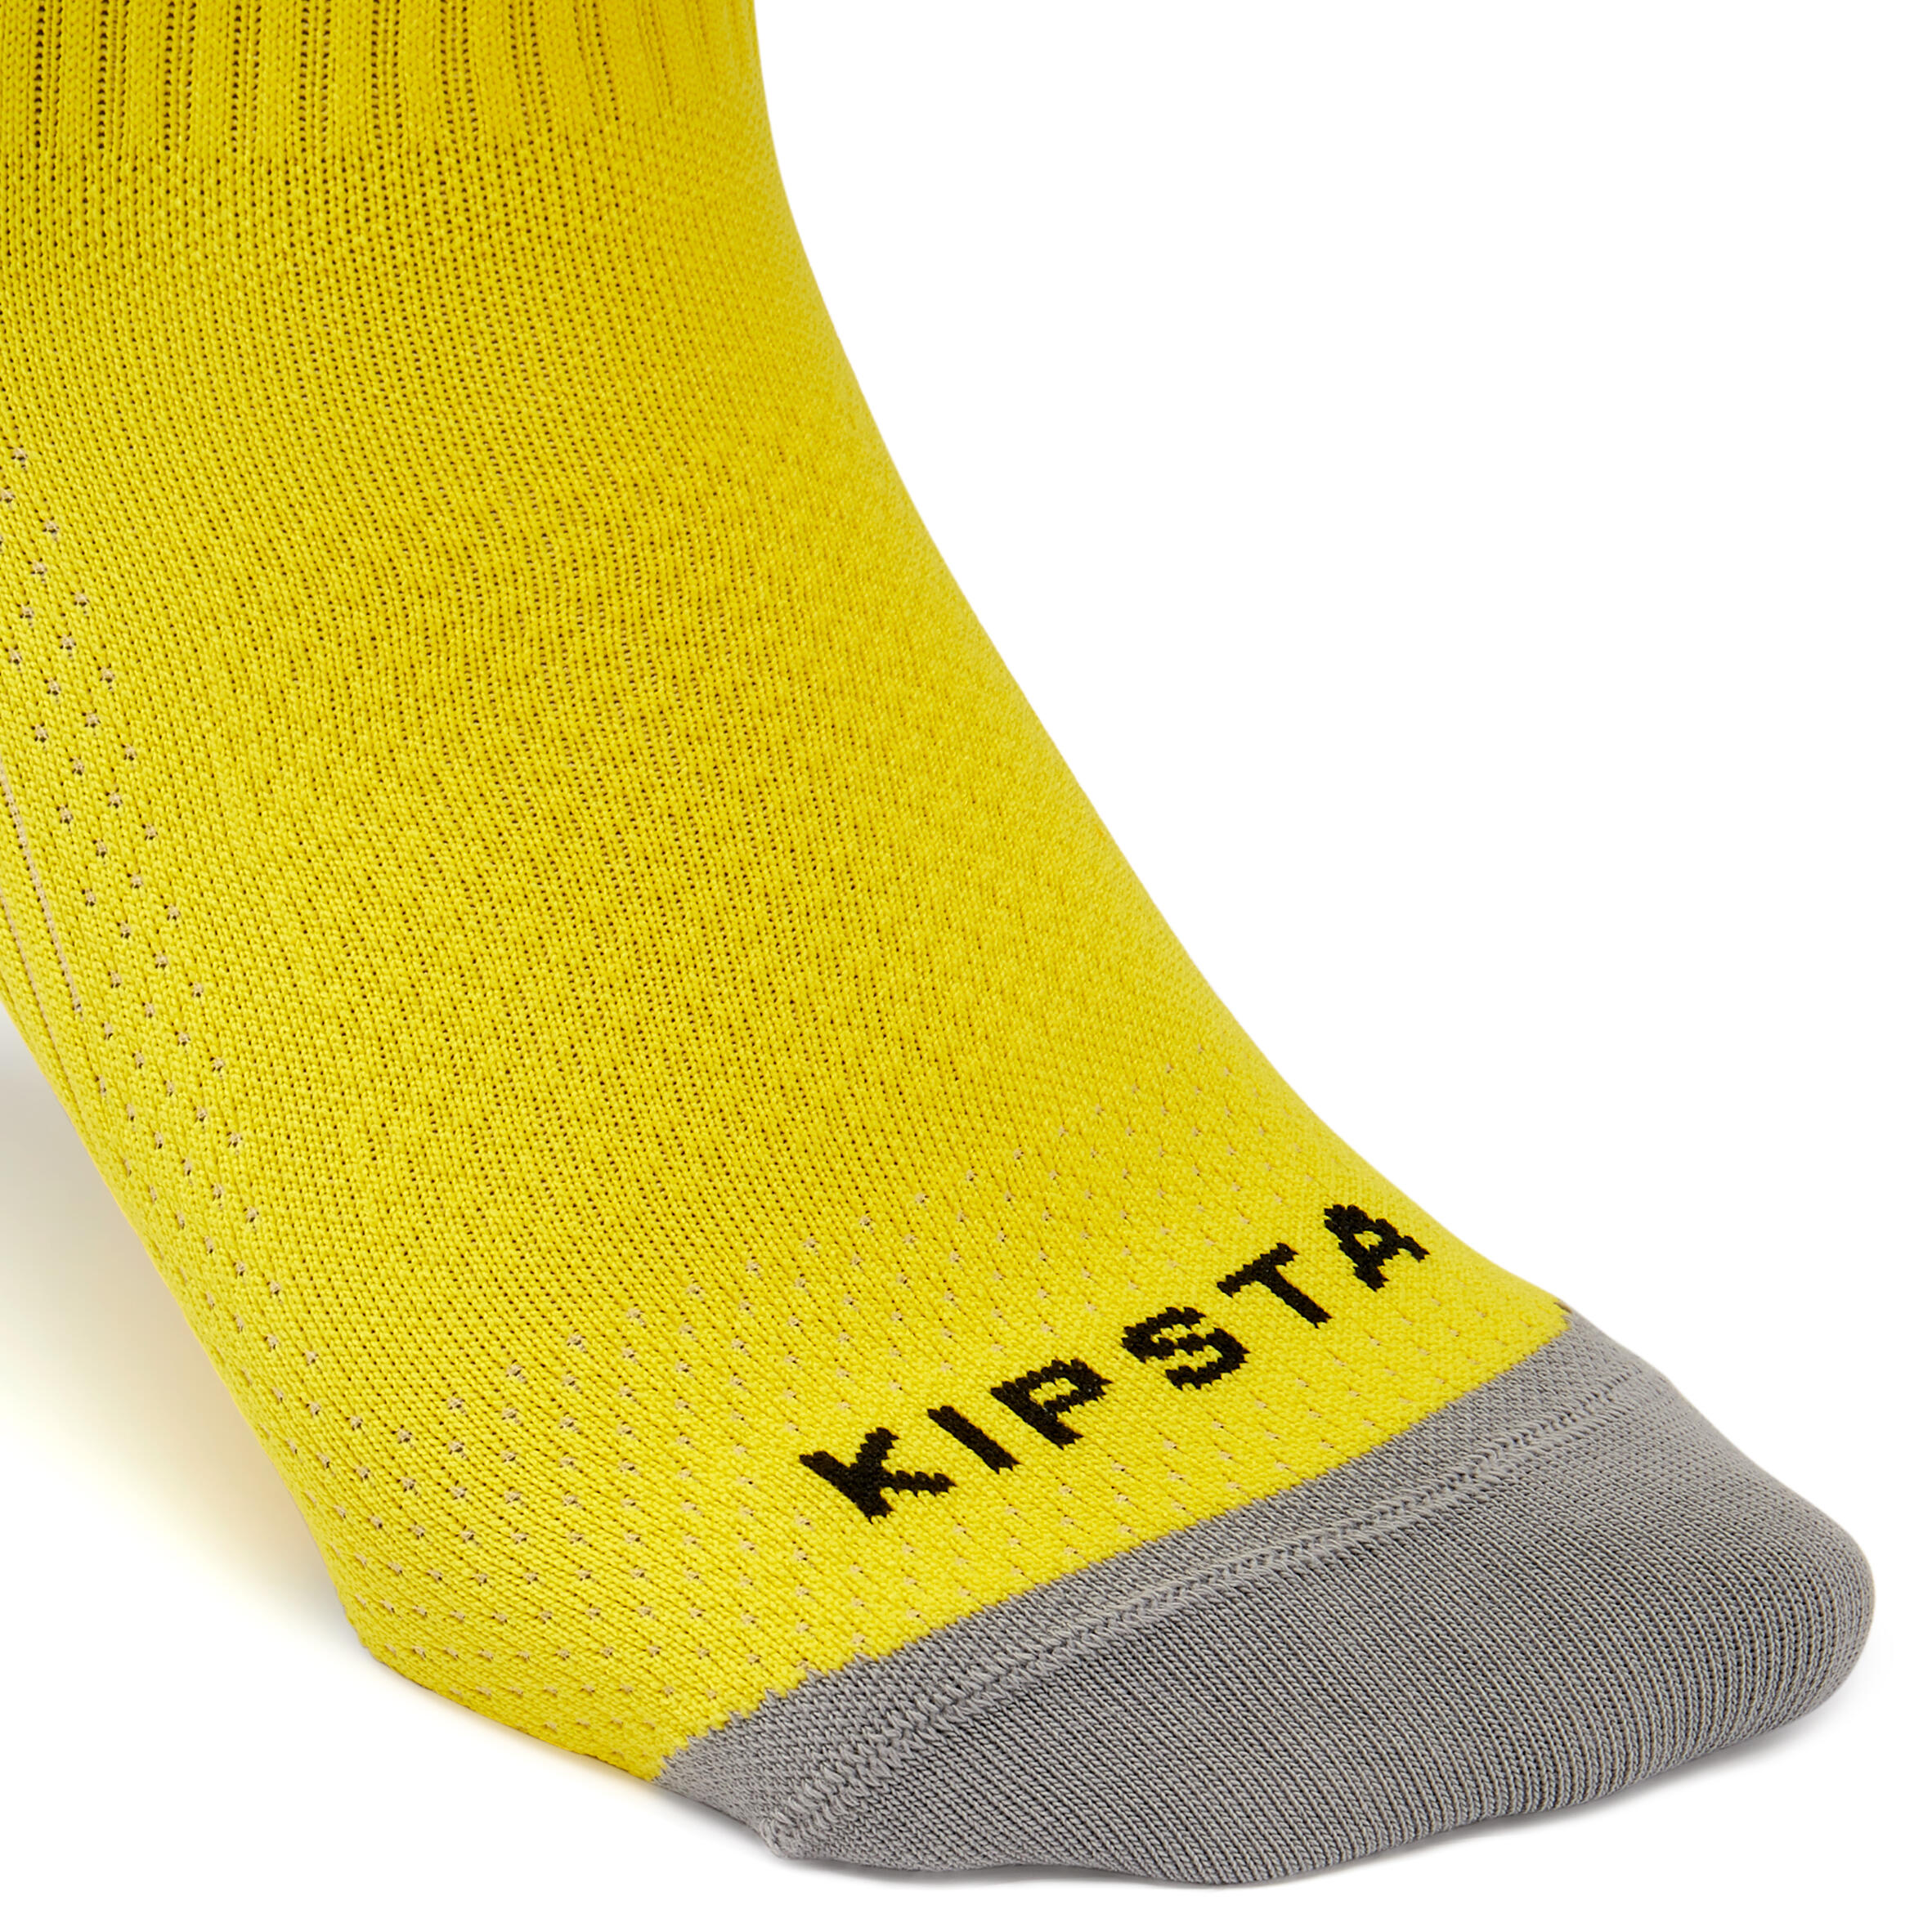 Kids' Grippy Football Socks Viralto II MiD Club - Yellow 4/5